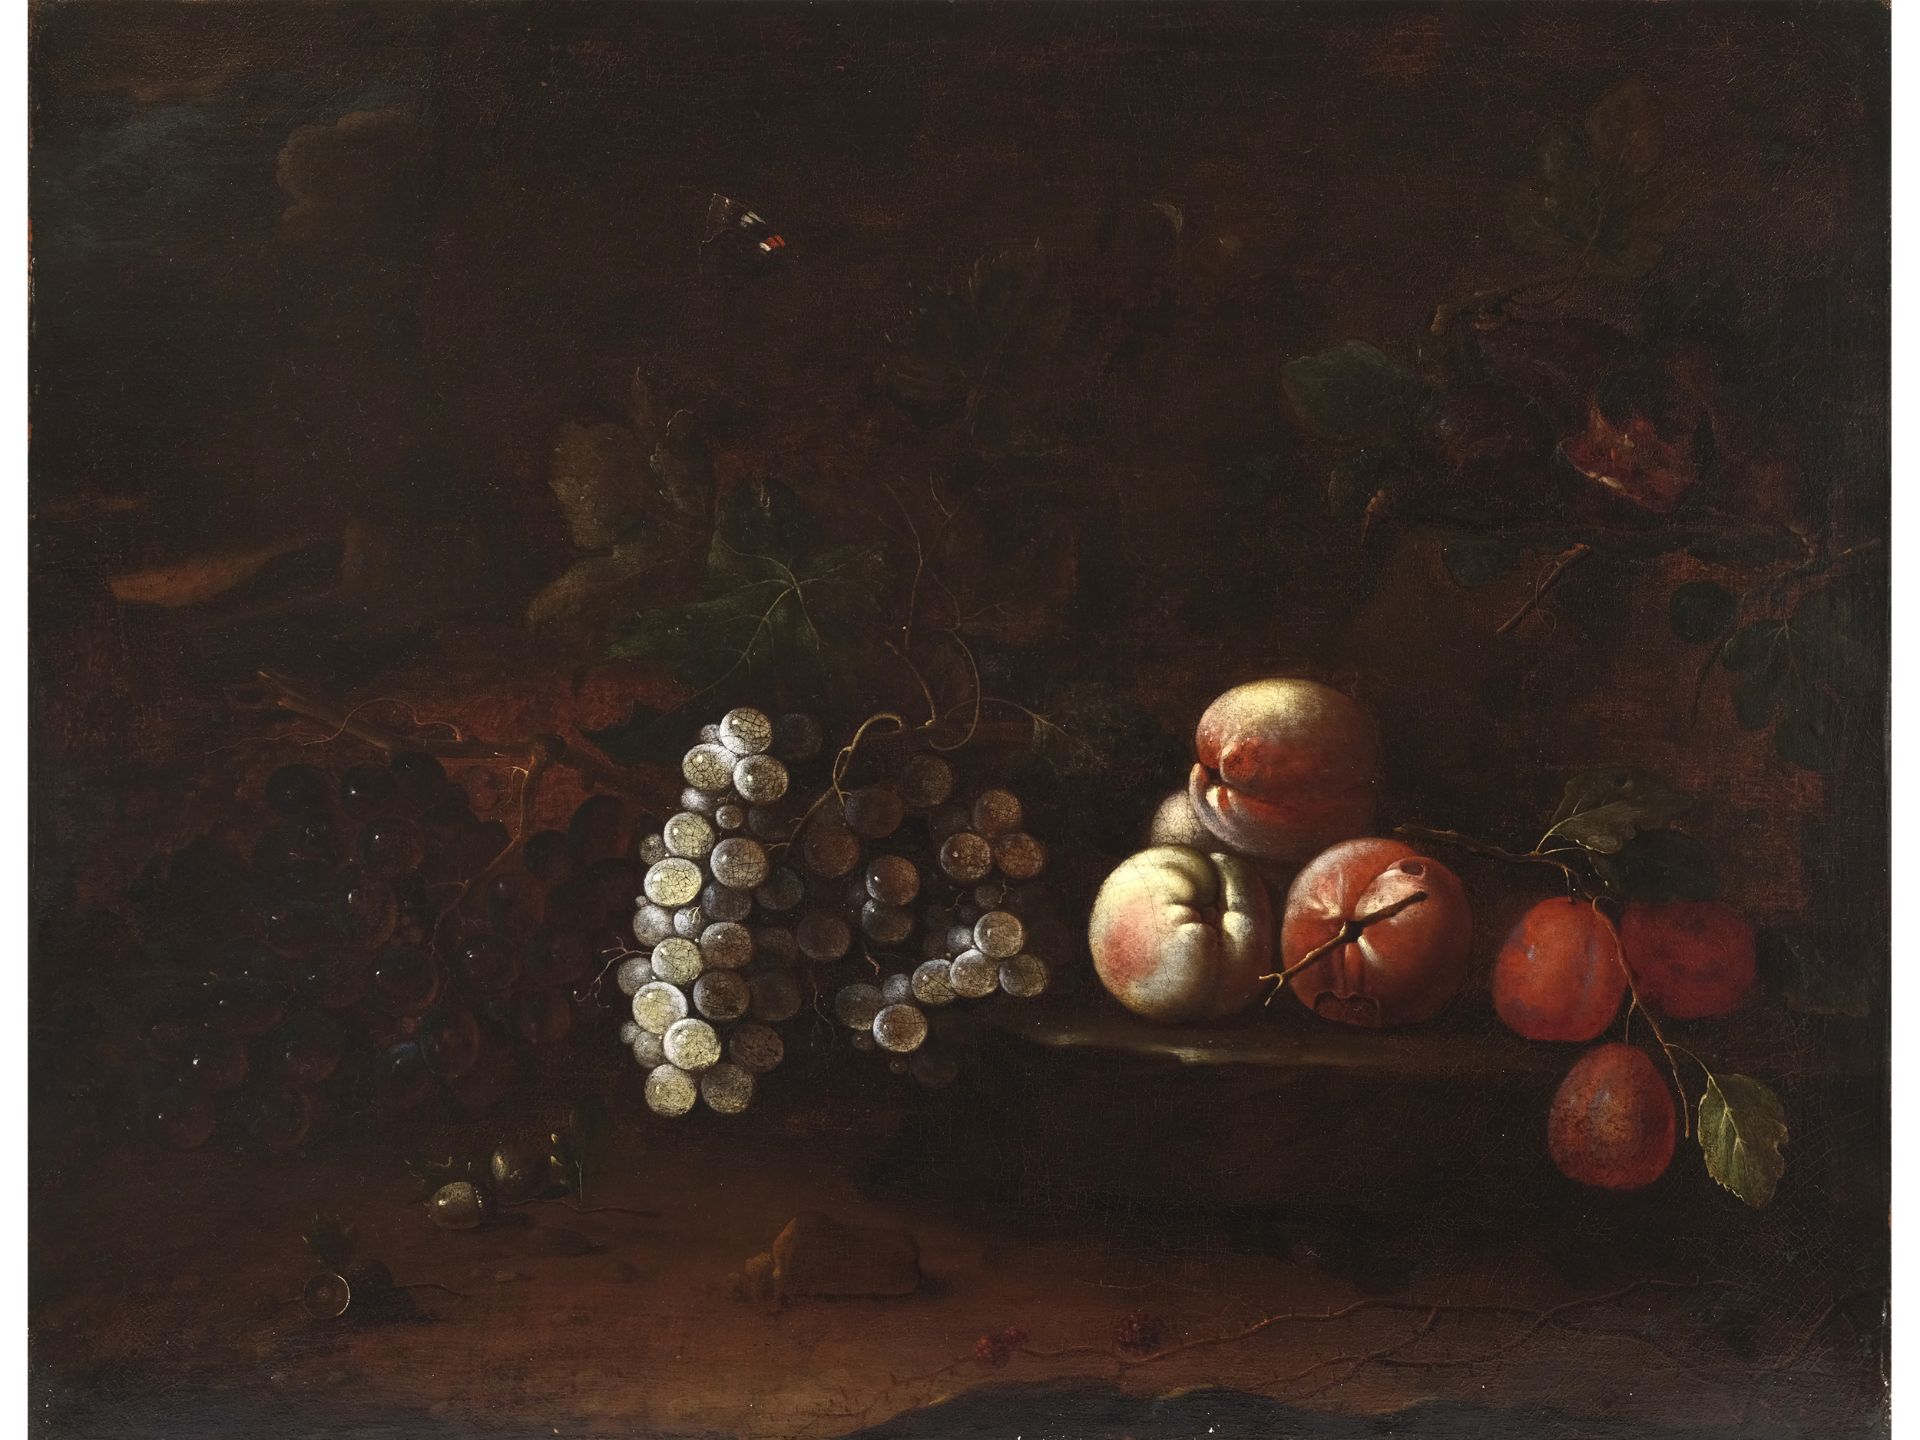 Unbekannter Maler, Stillleben, 17./18. Jahrhundert
